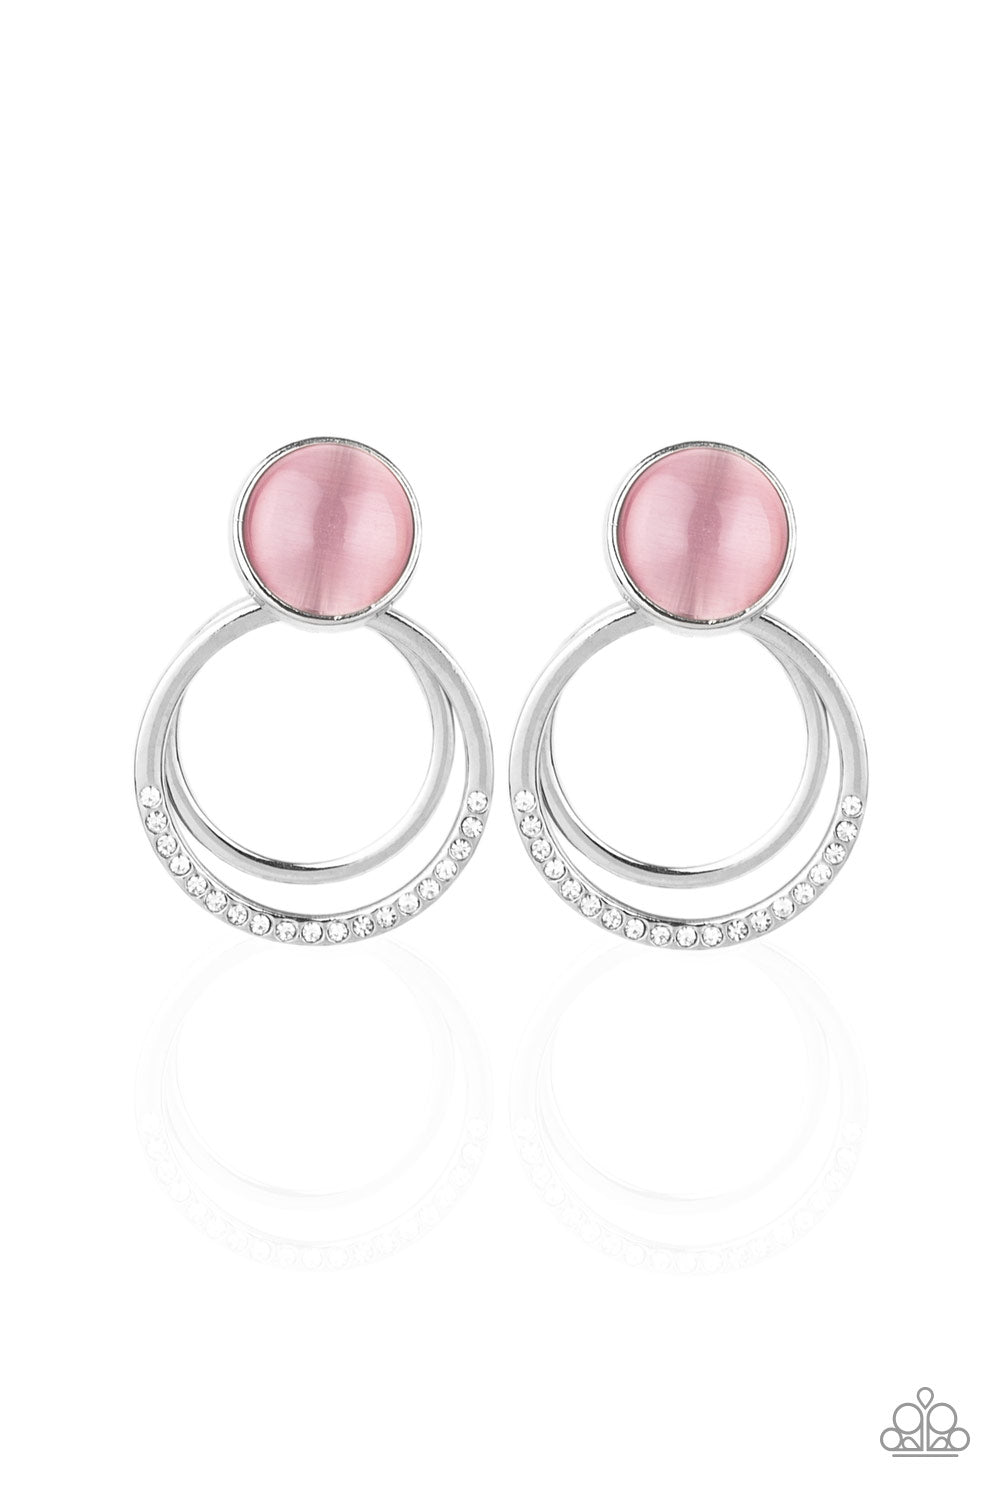 Glow Roll - pink - Paparazzi earrings